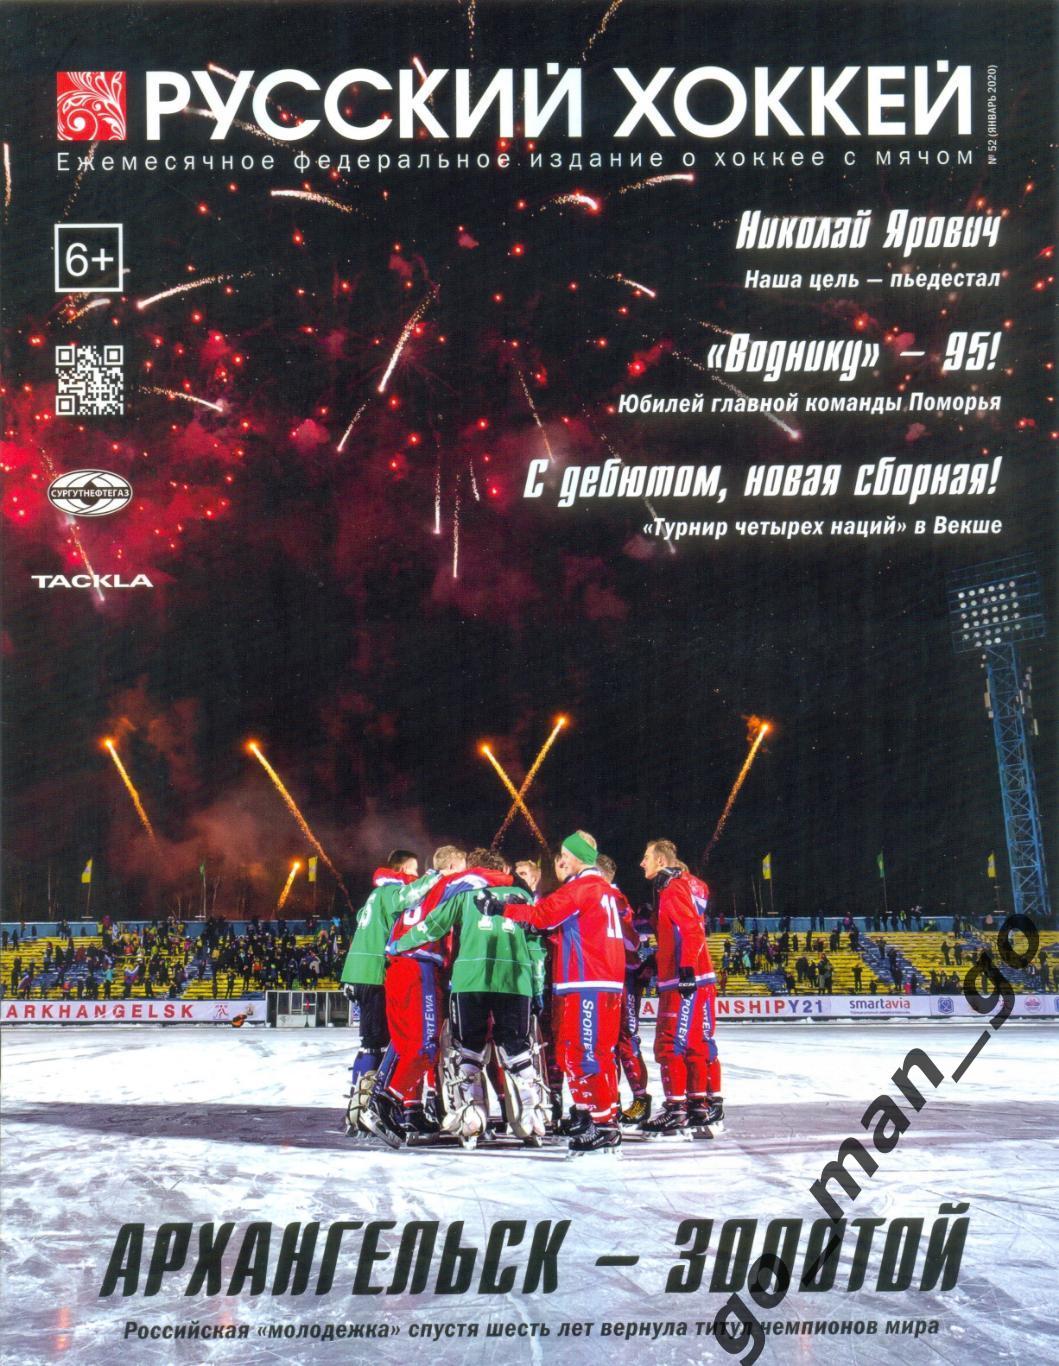 Журнал РУССКИЙ ХОККЕЙ № 52, январь 2020.